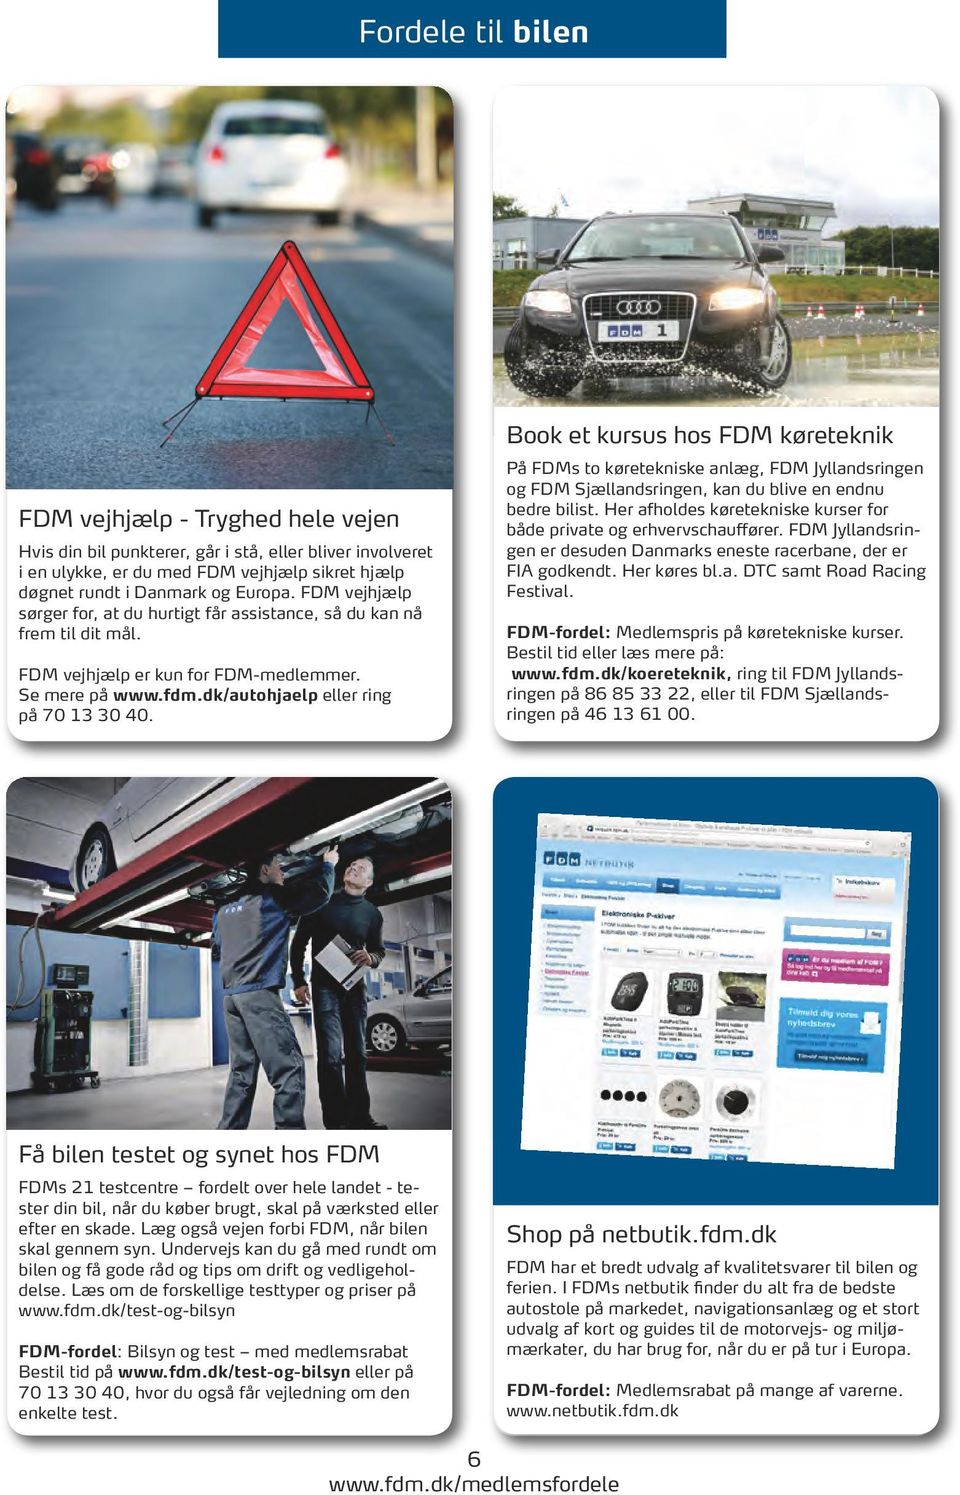 Book et kursus hos FDM køreteknik På FDMs to køretekniske anlæg, FDM Jyllandsringen og FDM Sjællandsringen, kan du blive en endnu bedre bilist.